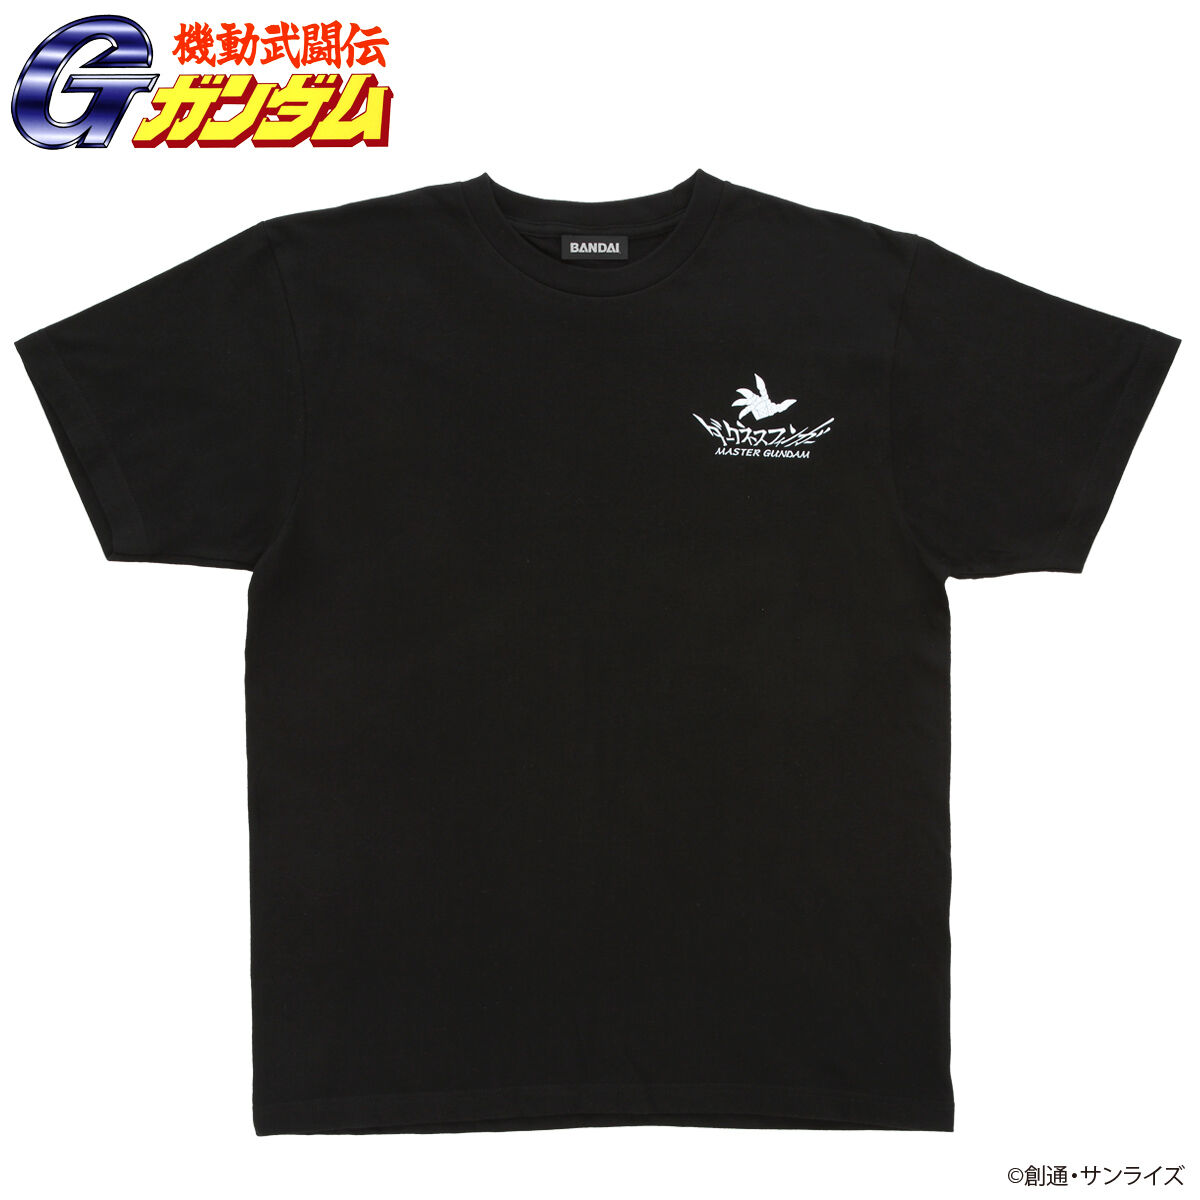 Mobile Fighter G Gundam Darkness Finger T-shirt